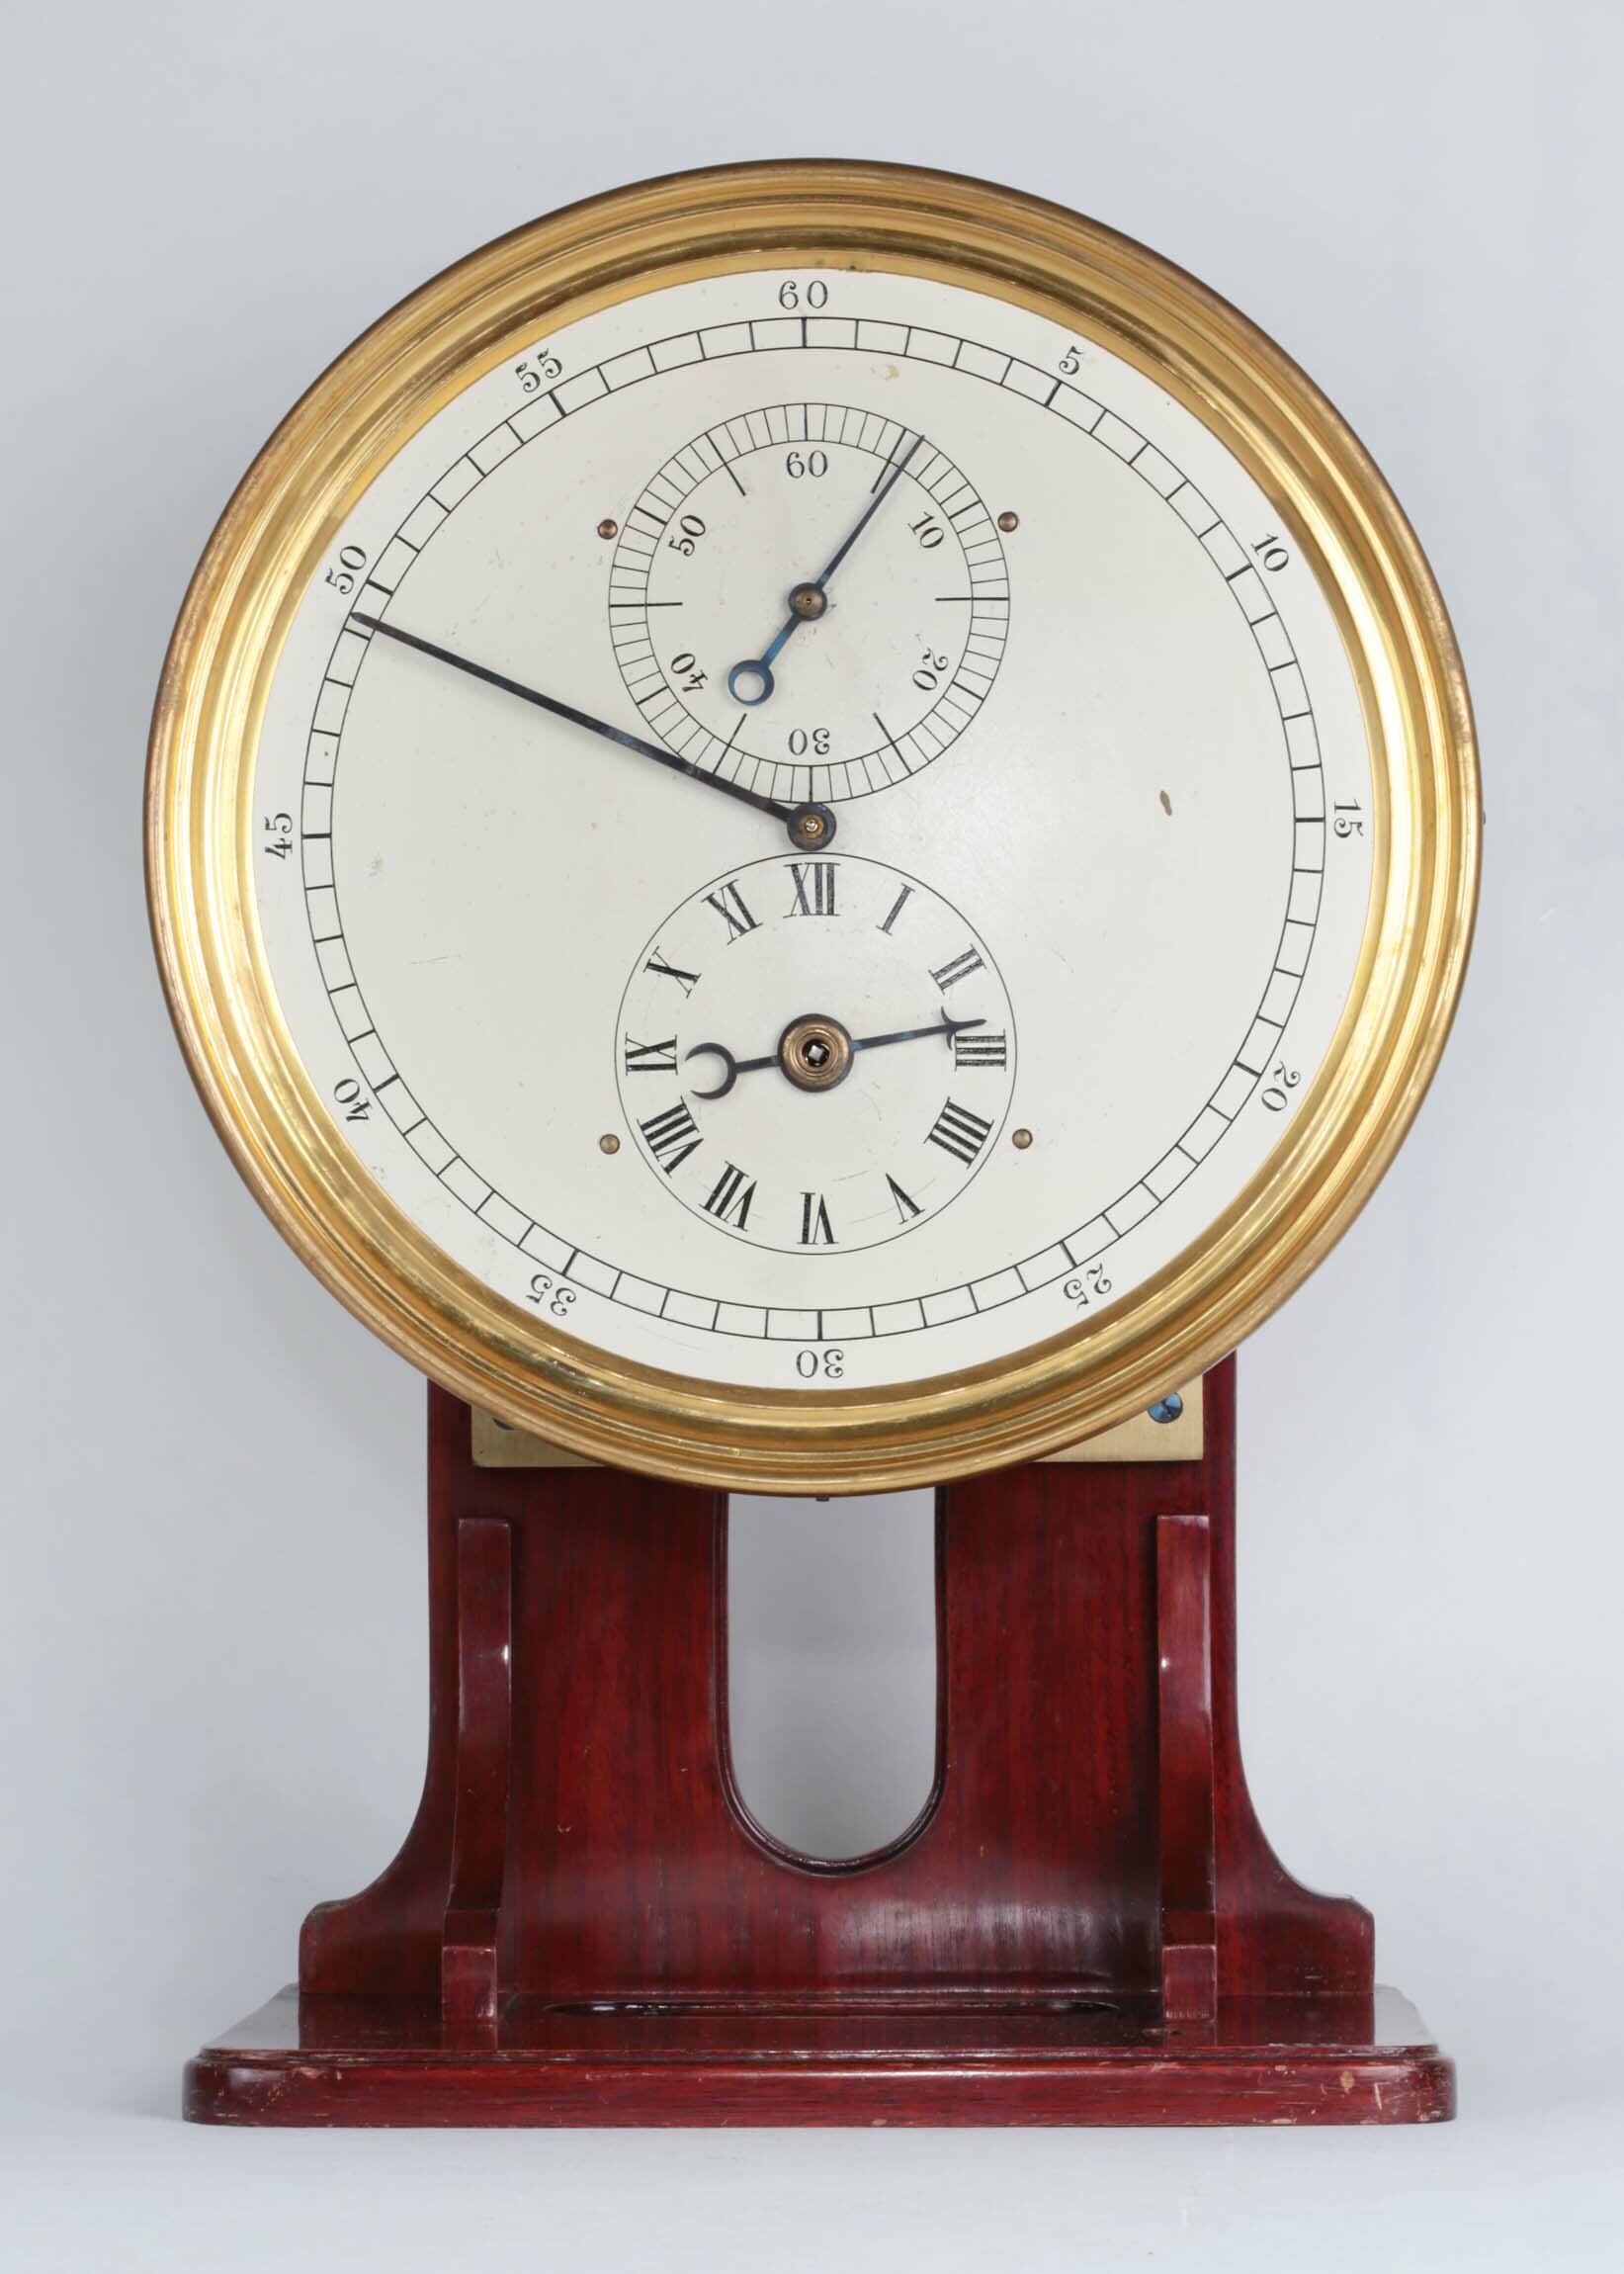 Uhrwerk, A. G. für Uhrenfabrikation, Lenzkirch, 1909 (Deutsches Uhrenmuseum CC BY-SA)